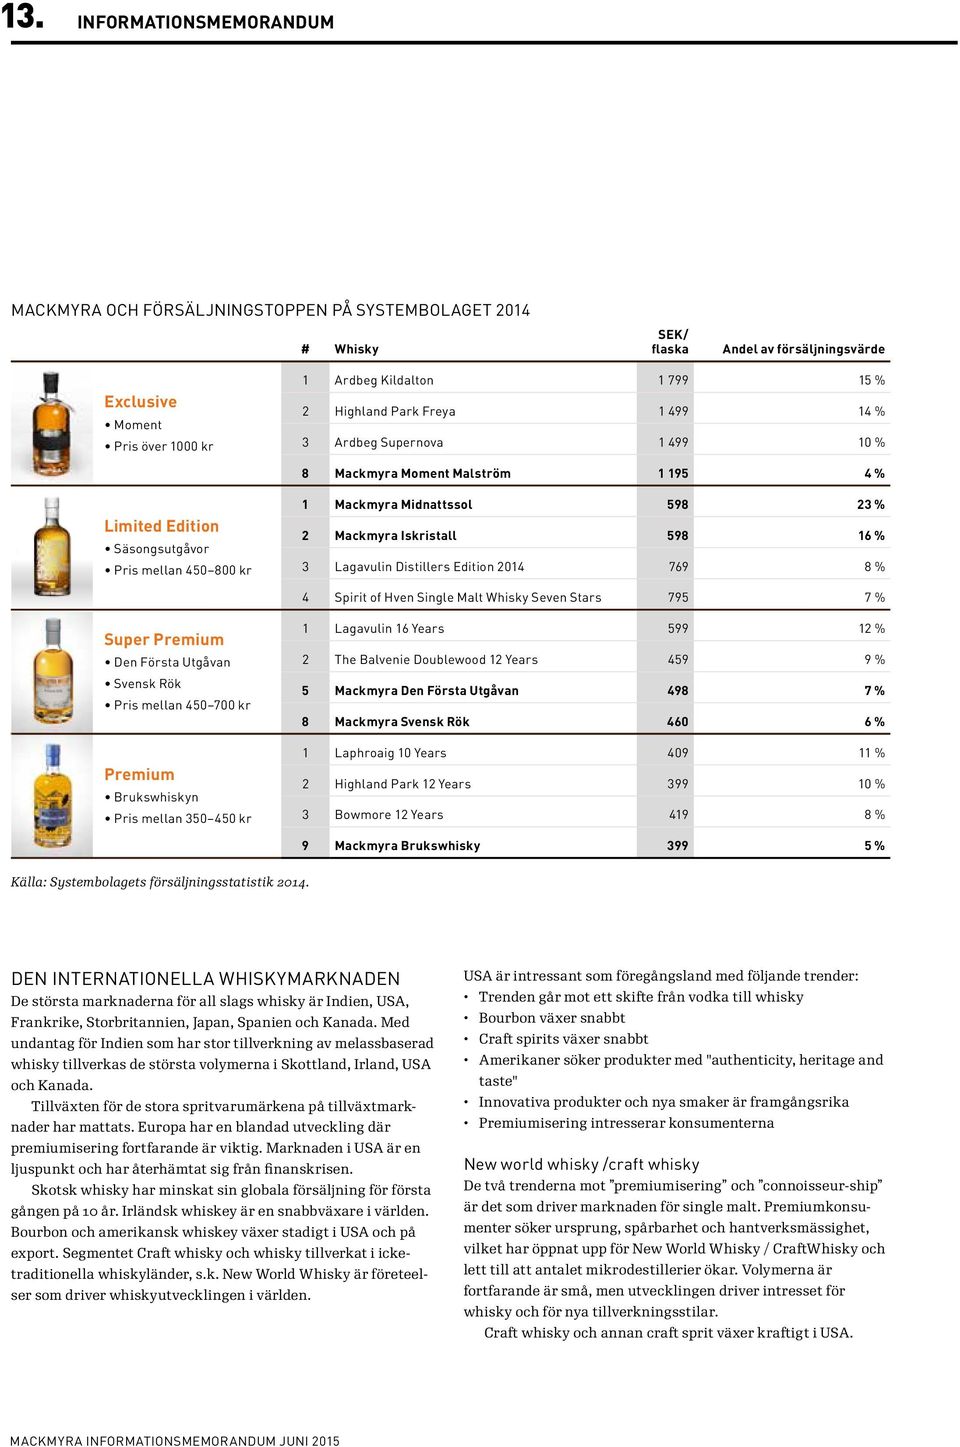 Iskristall 598 16 % 3 Lagavulin Distillers Edition 2014 769 8 % 4 Spirit of Hven Single Malt Whisky Seven Stars 795 7 % Super Premium Den Första Utgåvan Svensk Rök Pris mellan 450 700 kr Premium